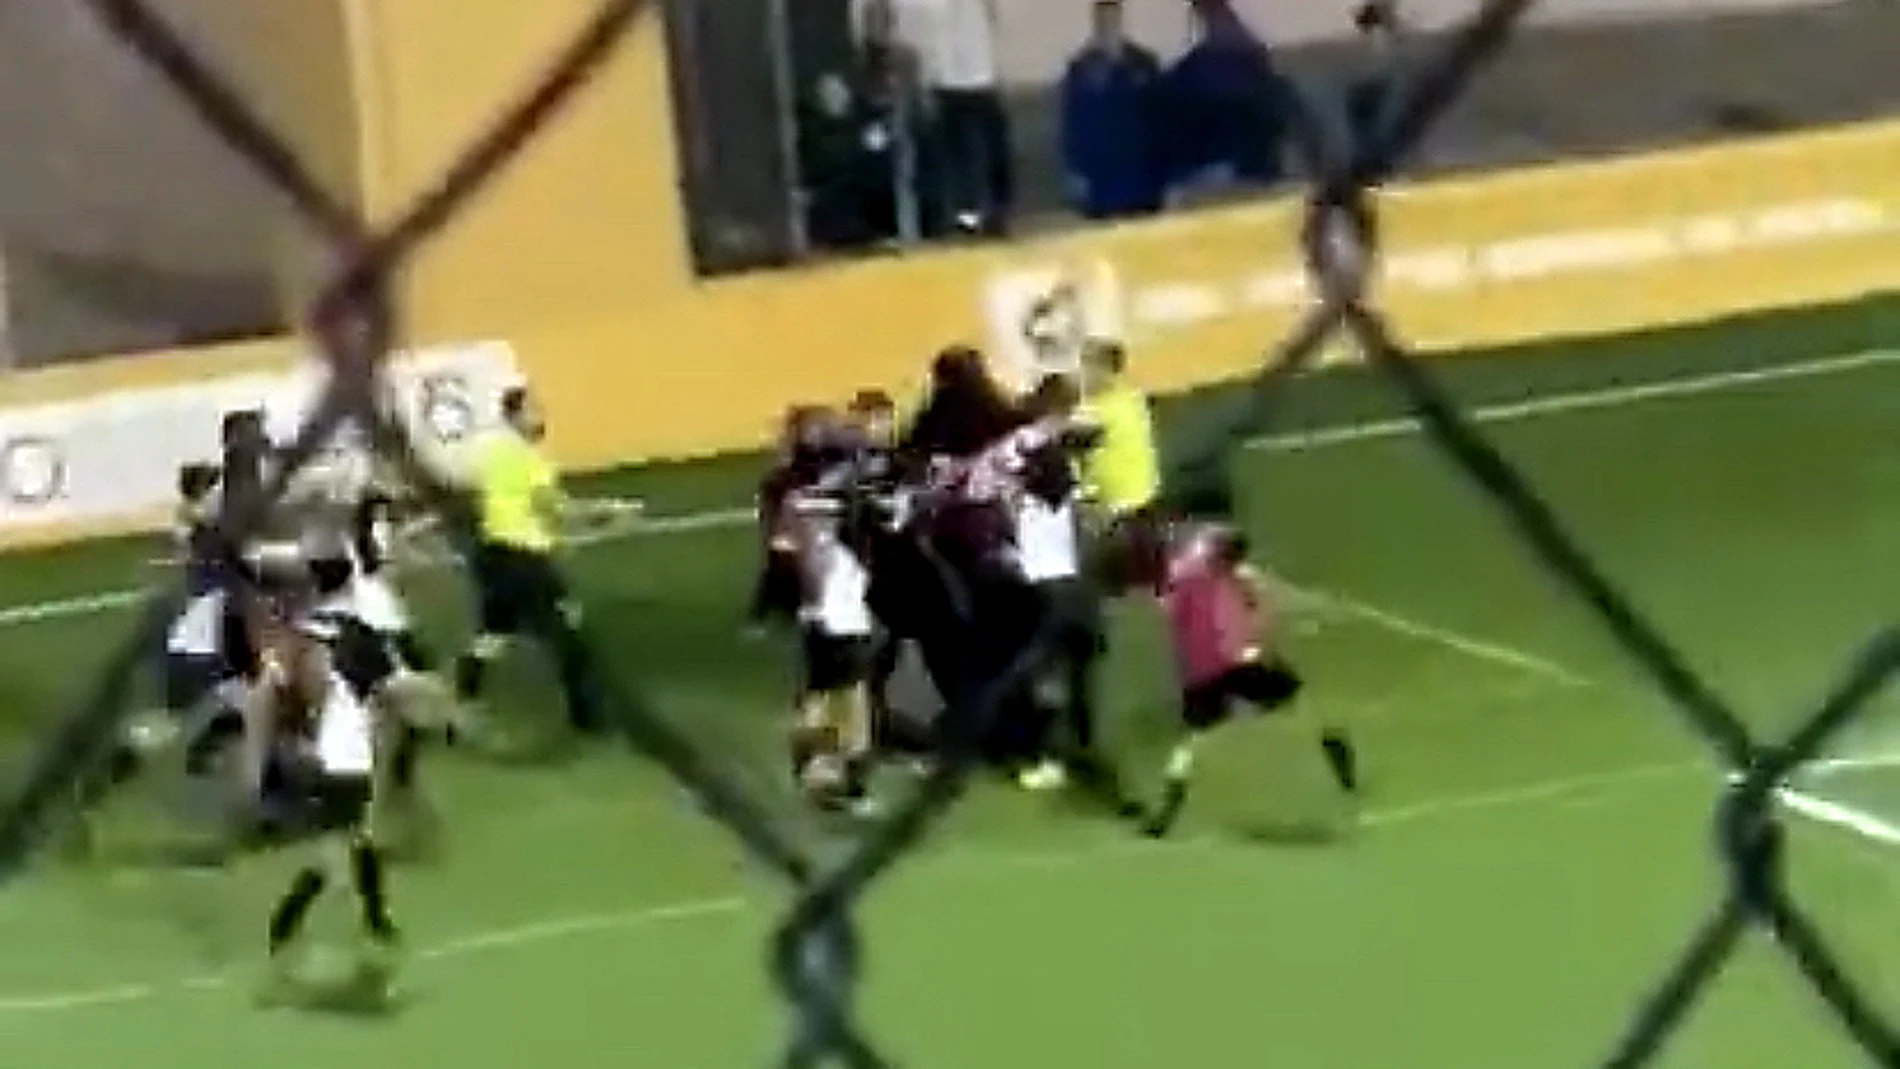 El árbitro fue agredido por varios jugadores del Sporting Atlético en un partido de la categoría cadete en Ceuta